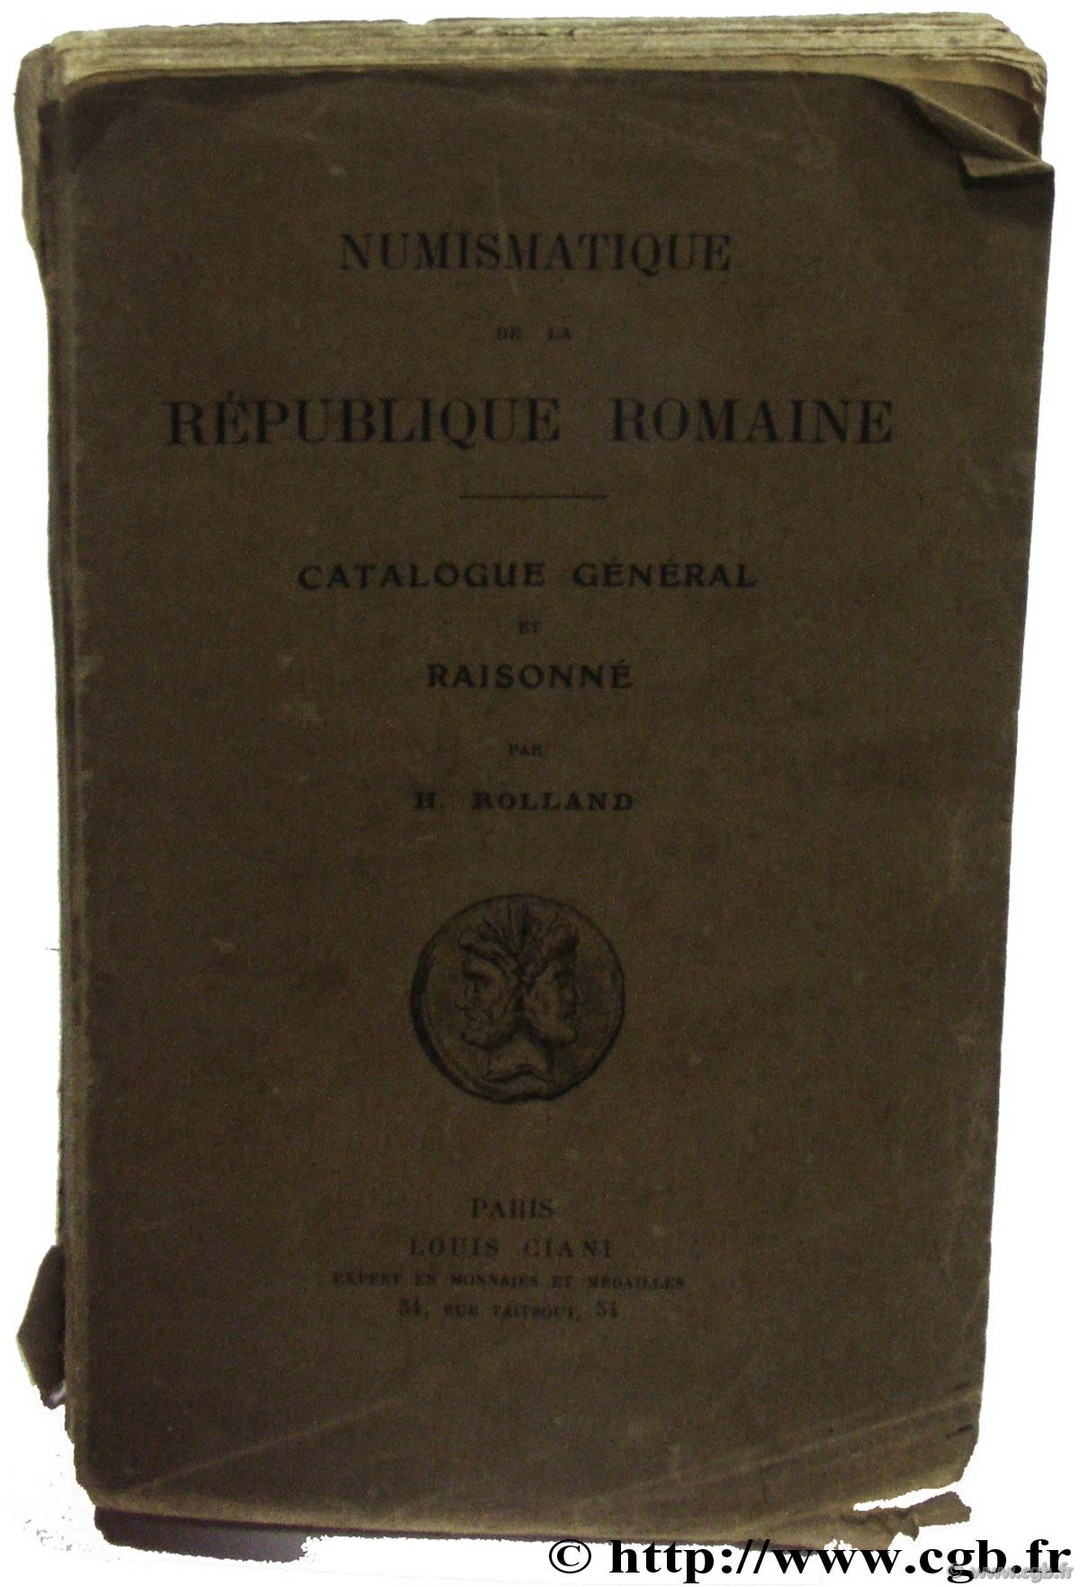 Numismatique de la République romaine ROLLAND H.